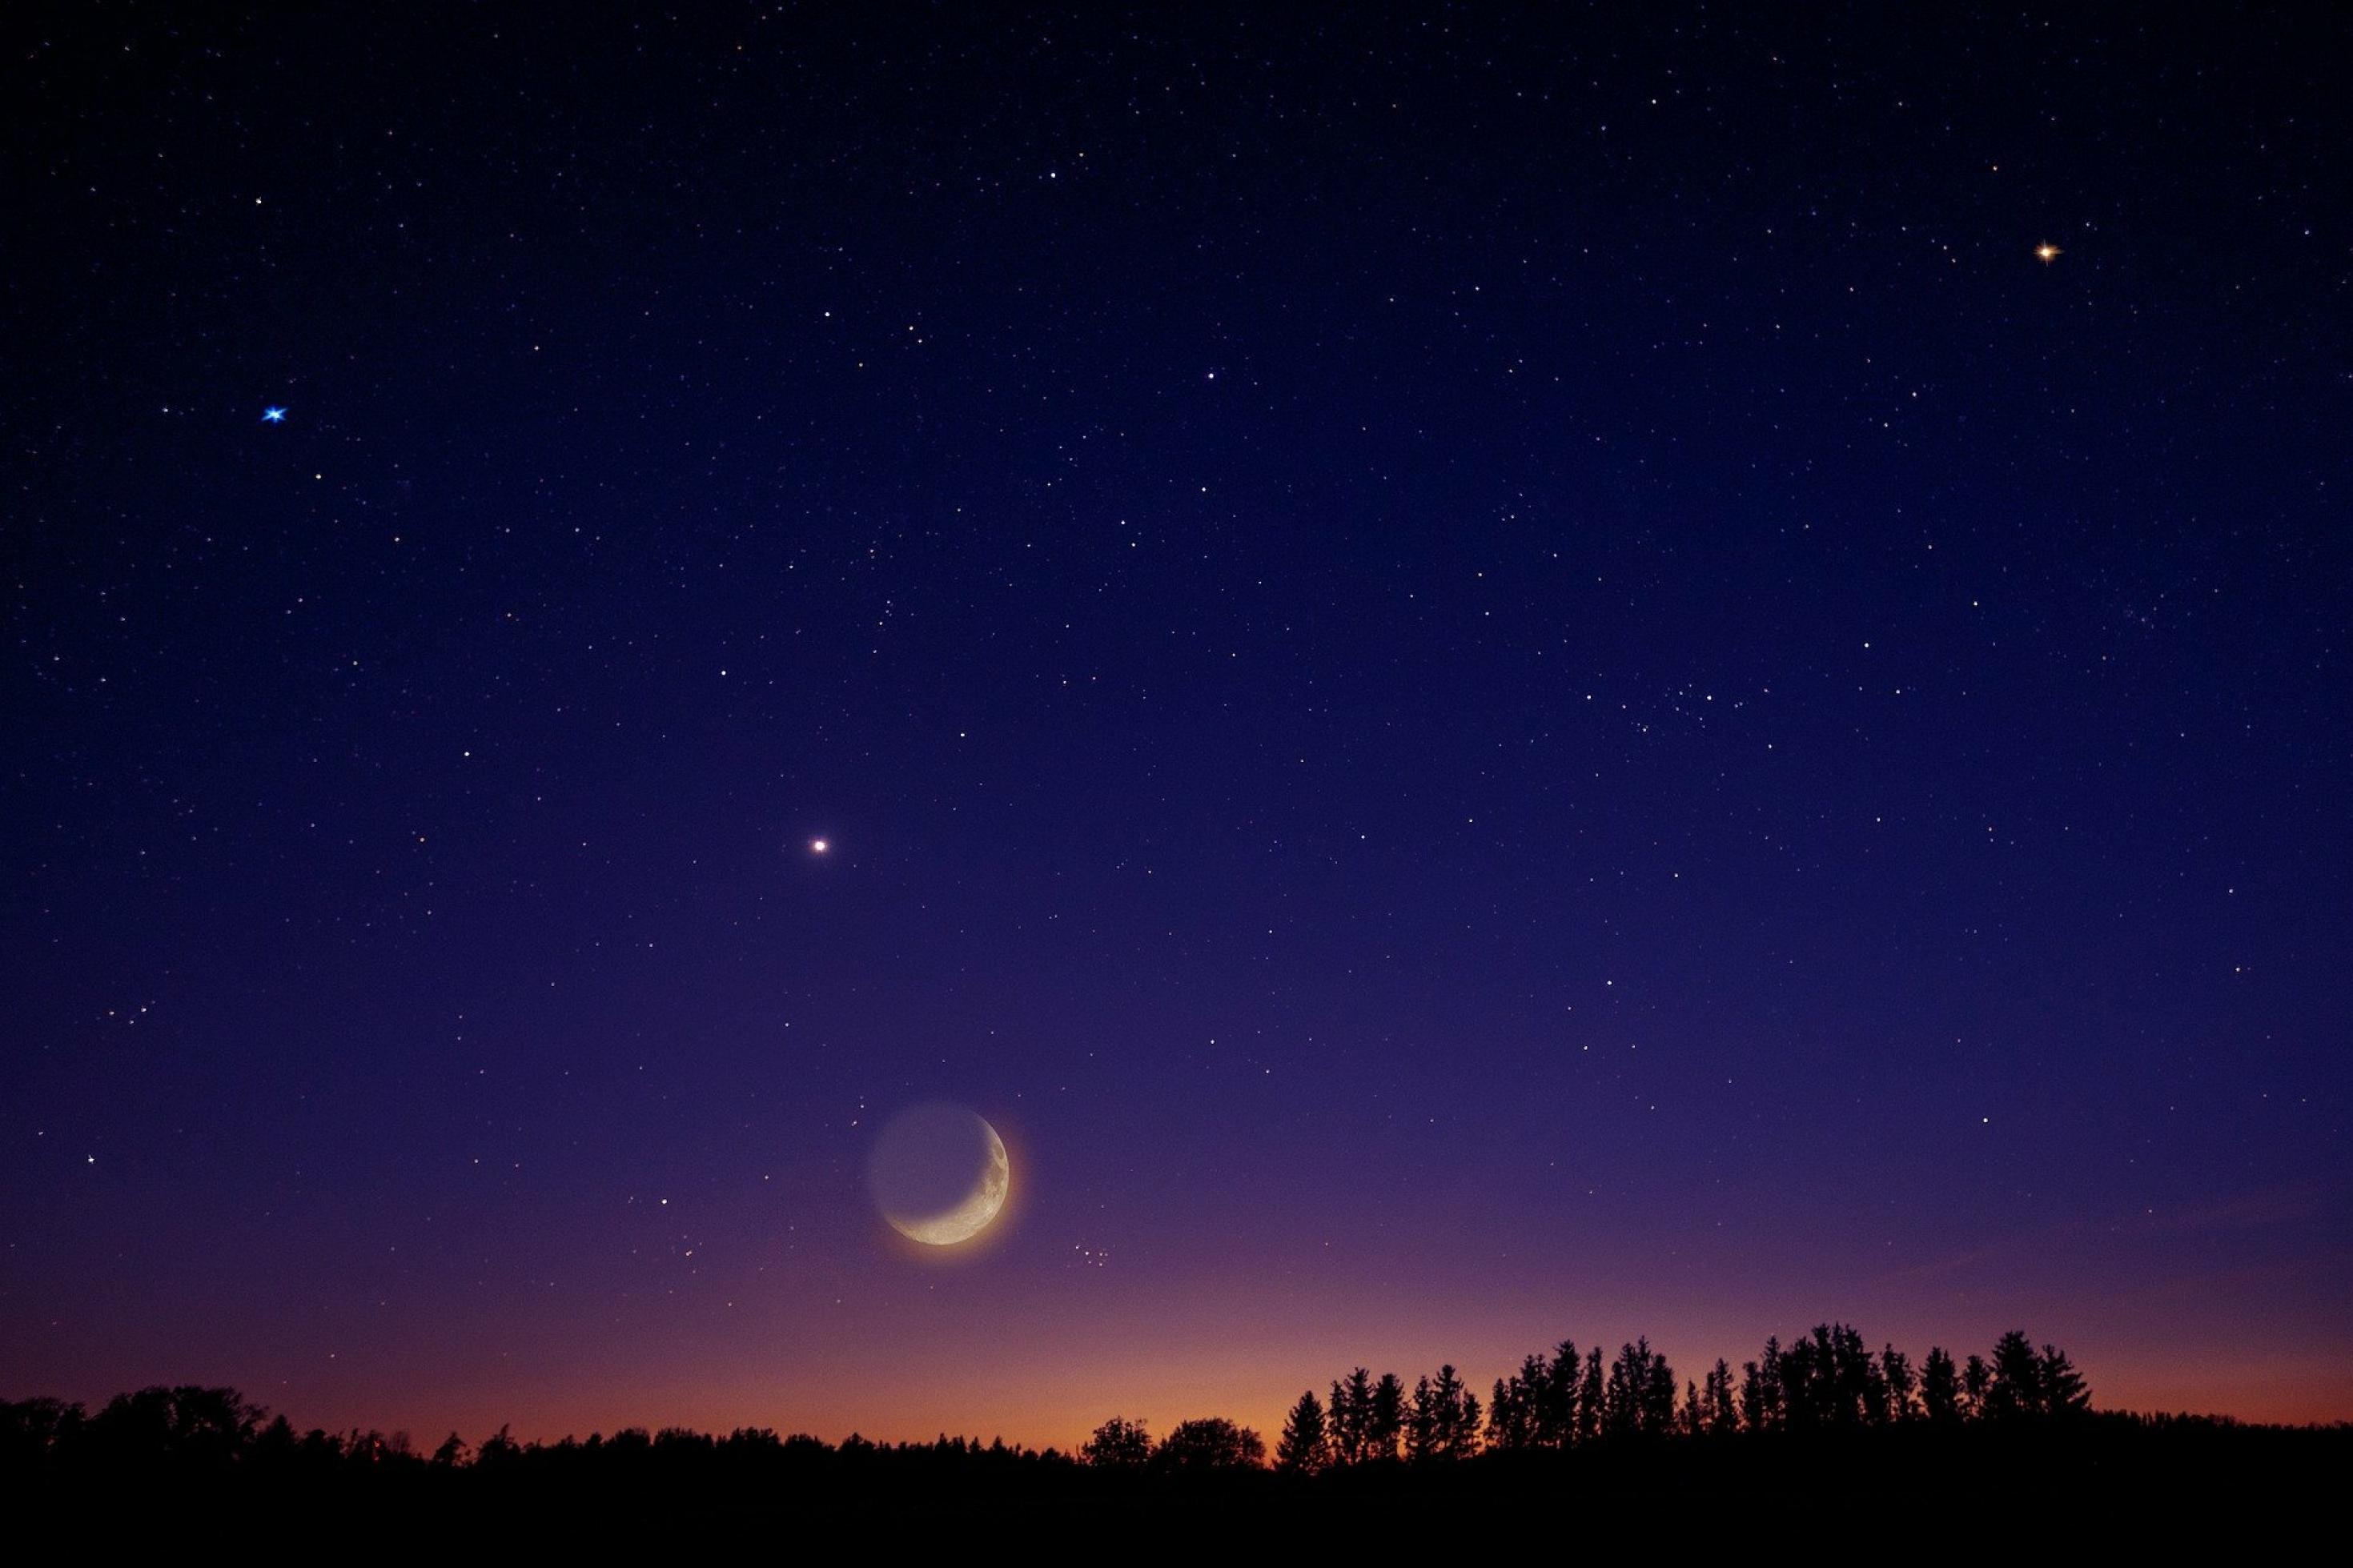 Über den Baumwipfeln eines Waldes sind der sichelförmige Mond und ein paar helle Sterne am Nachthimmel zu sehen.